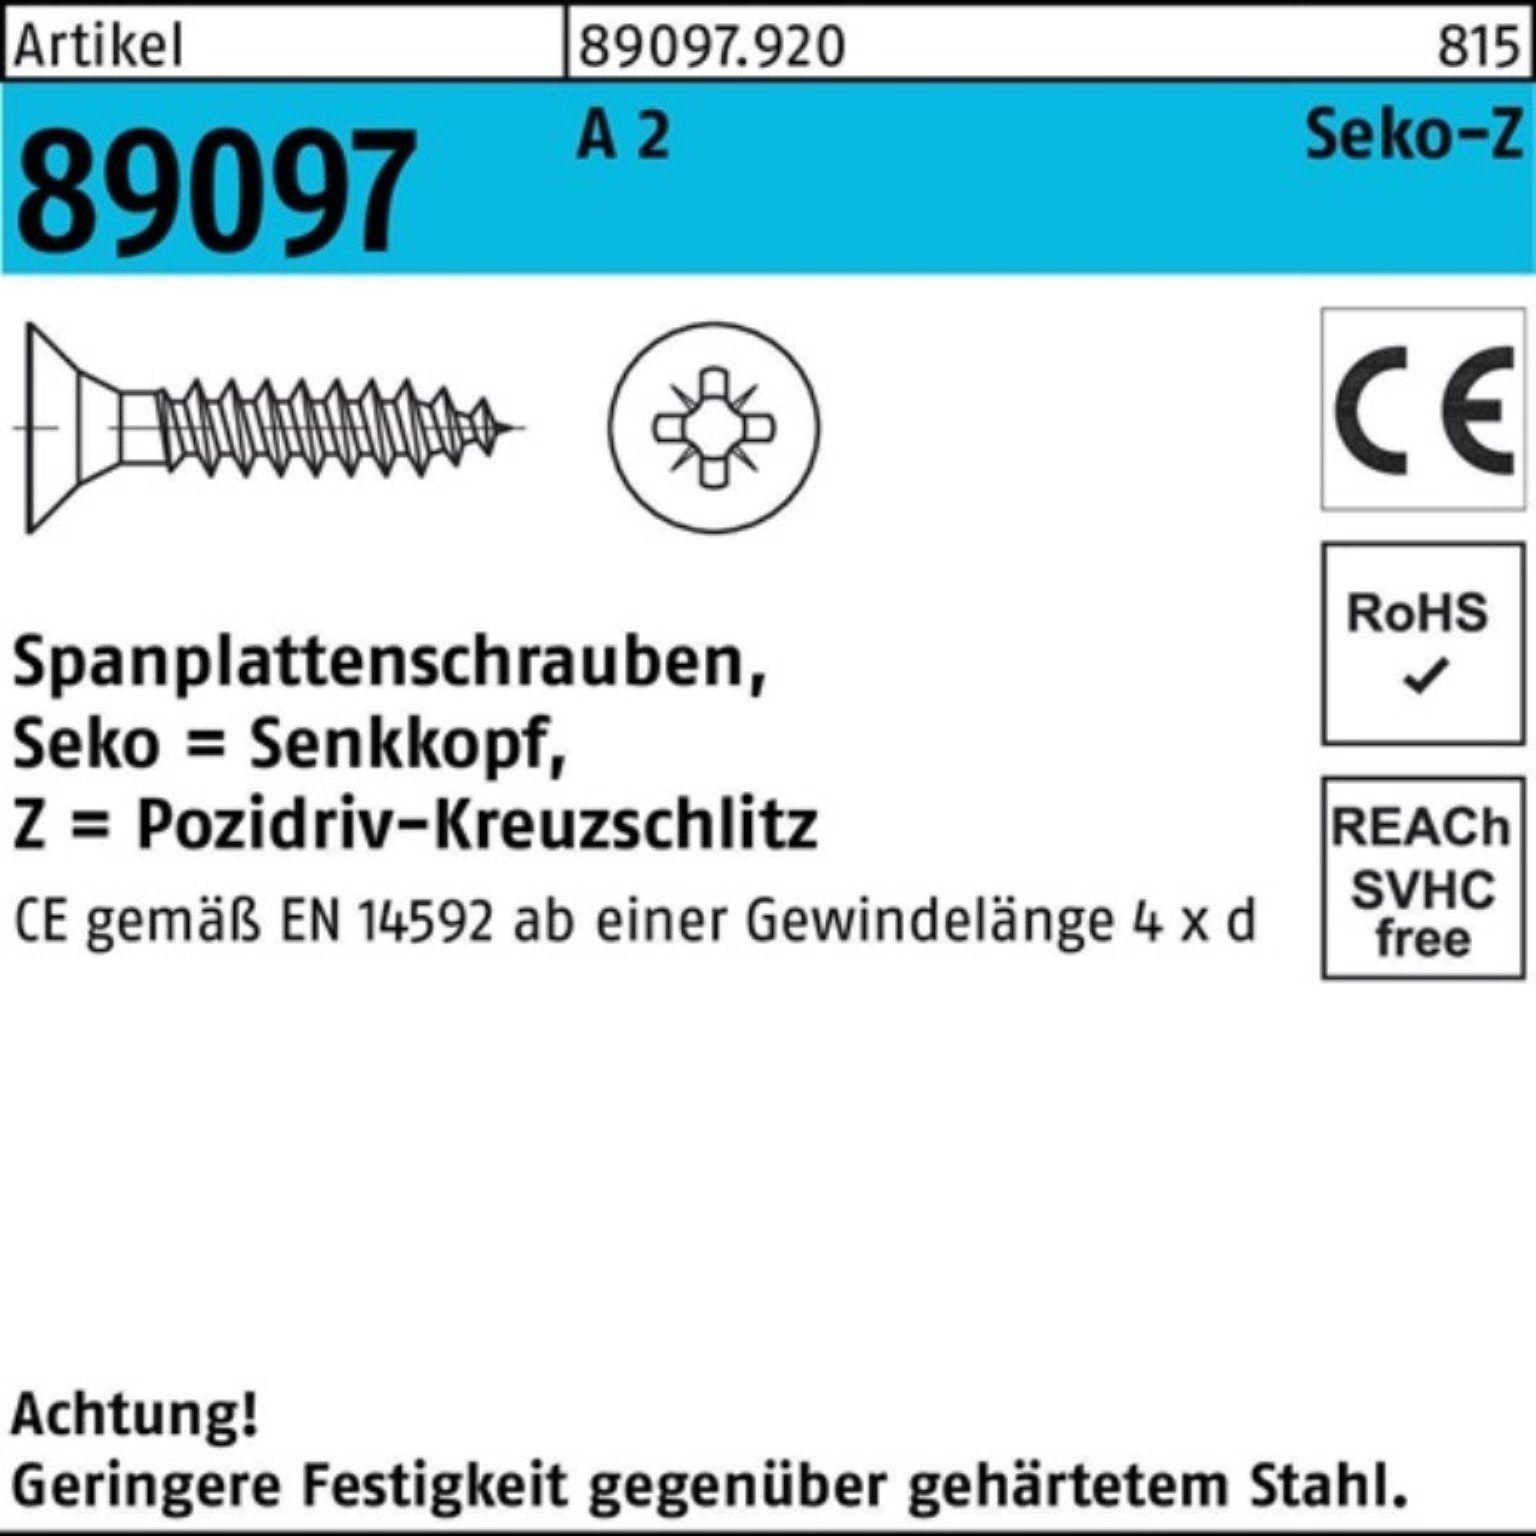 Reyher Pack 89097 R 50-Z St PZ 1000 2 VG 5x Spanplattenschraube A SEKO 1000er Spanplattenschraube